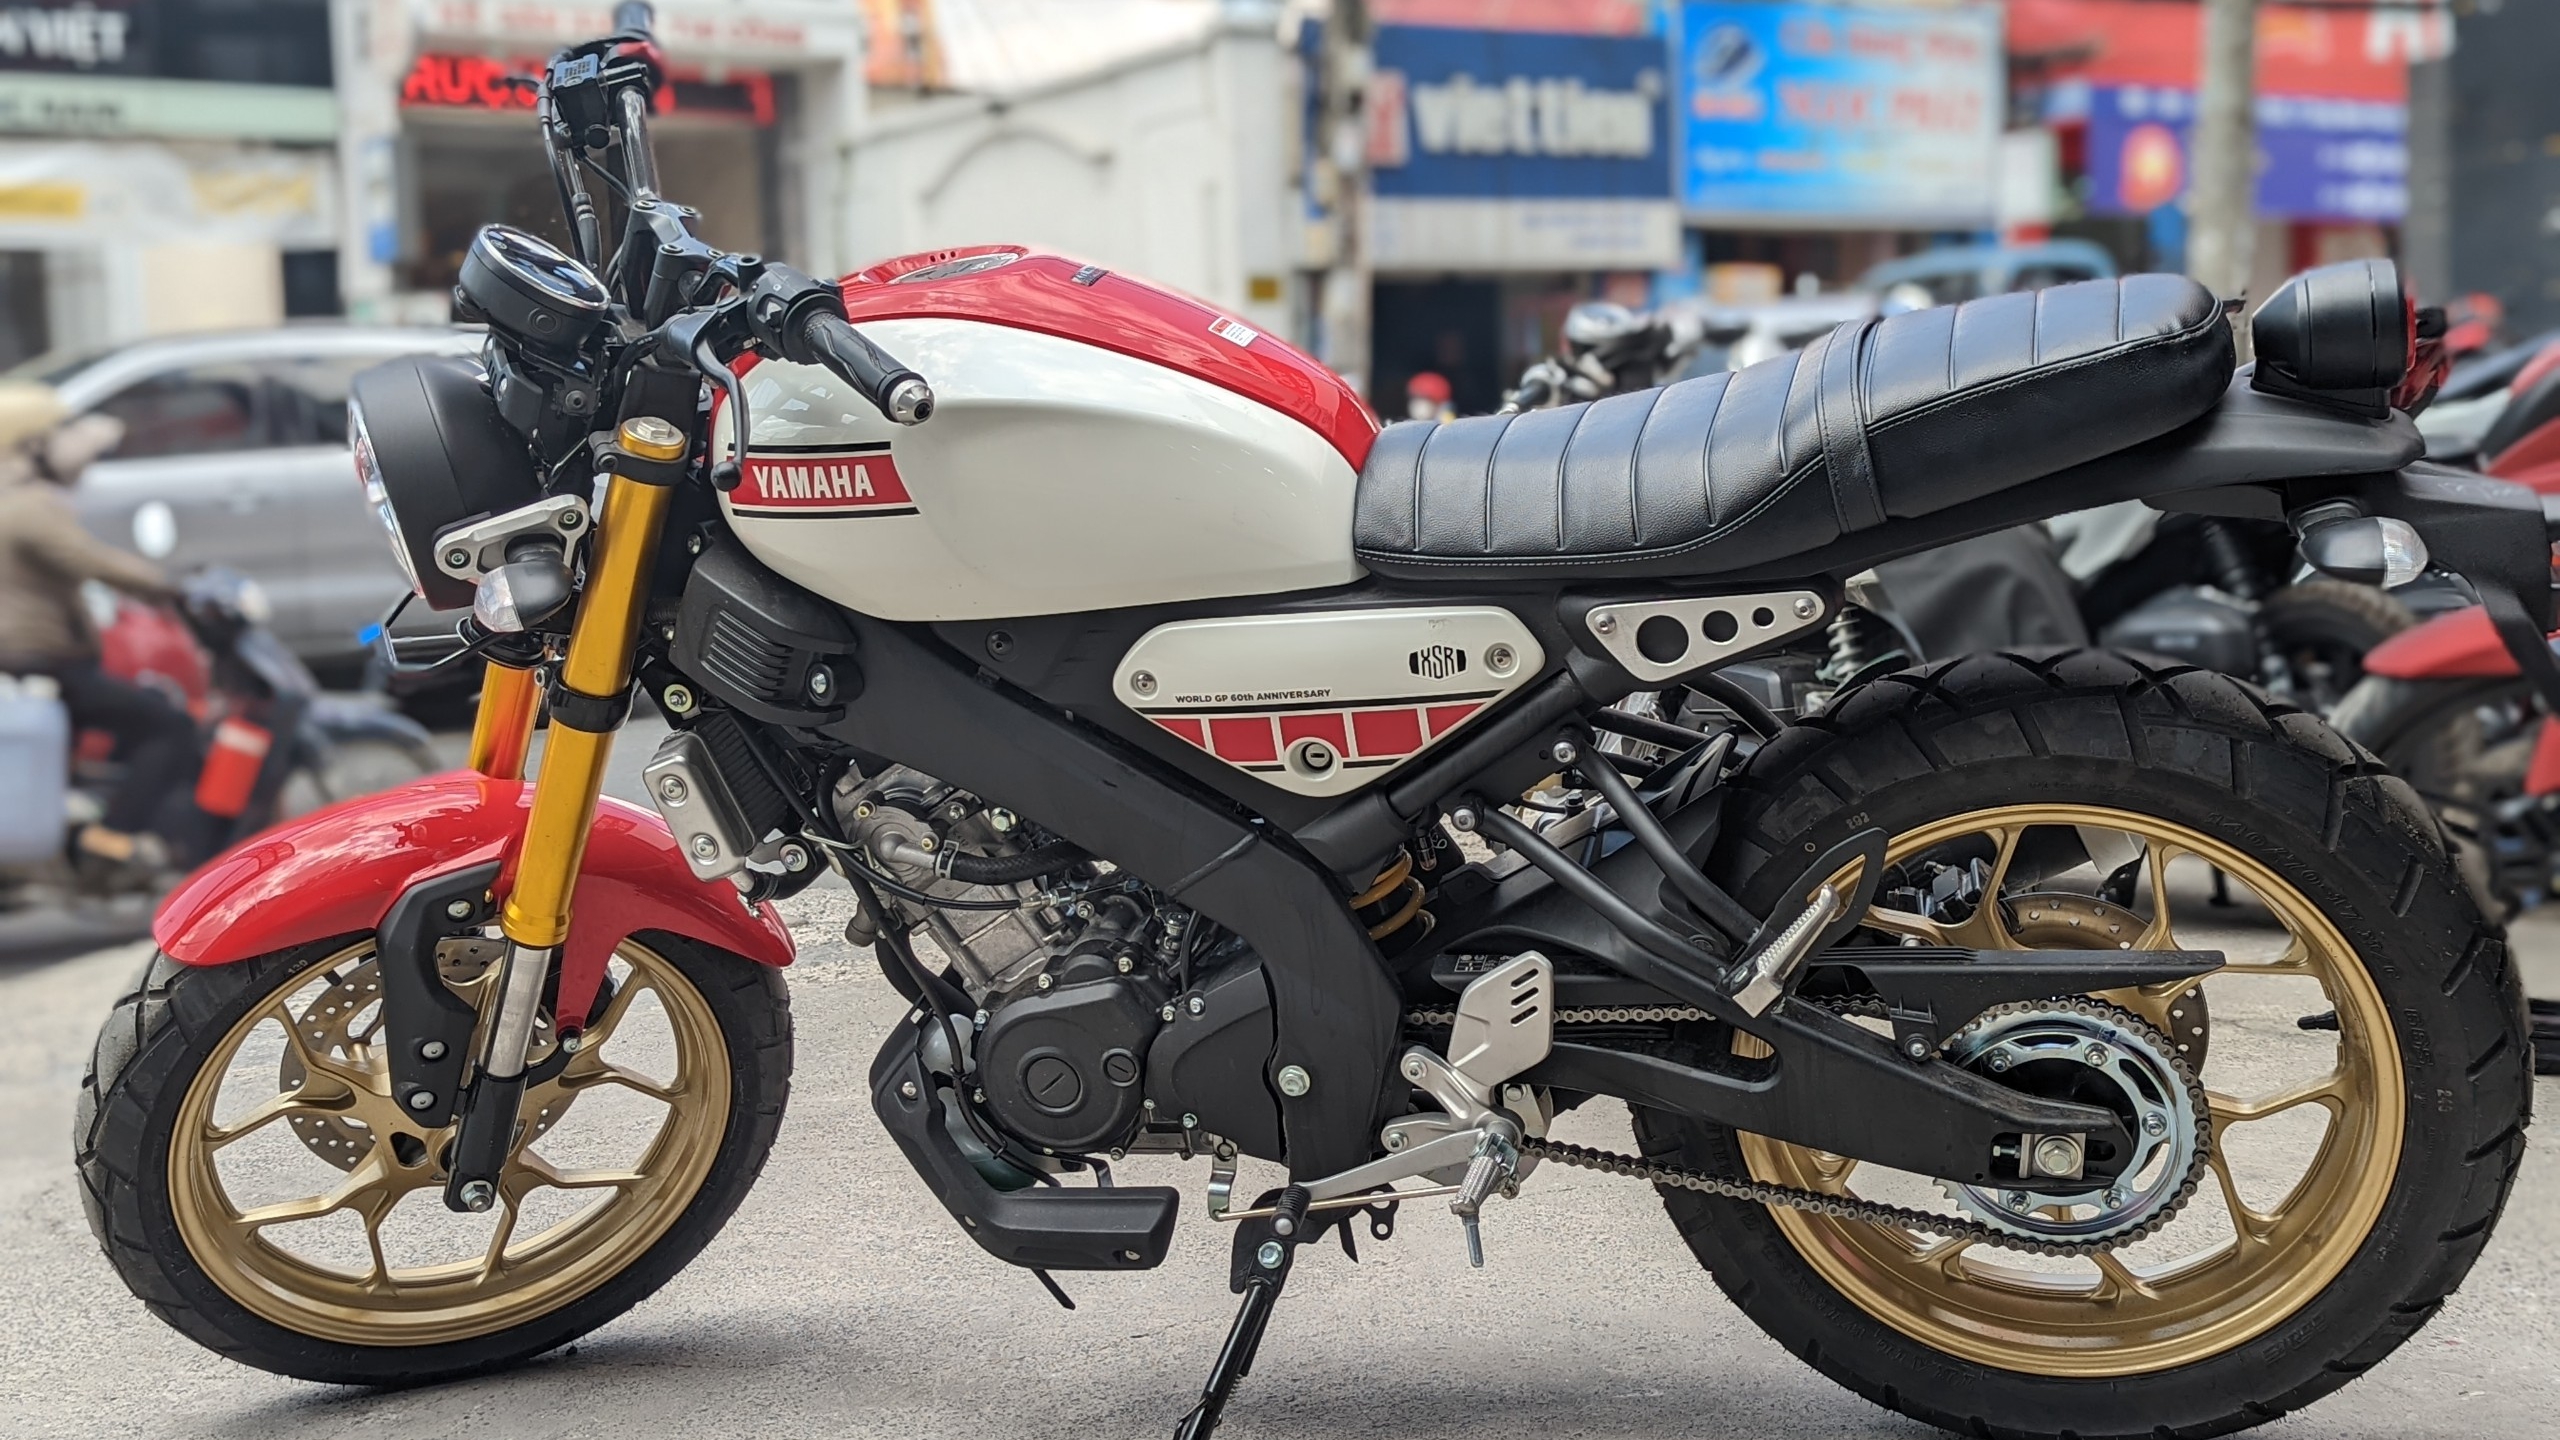 Yamaha XSR 155 2019 có giá hơn 80 triệu đồng tại VN đấu Honda CB150R